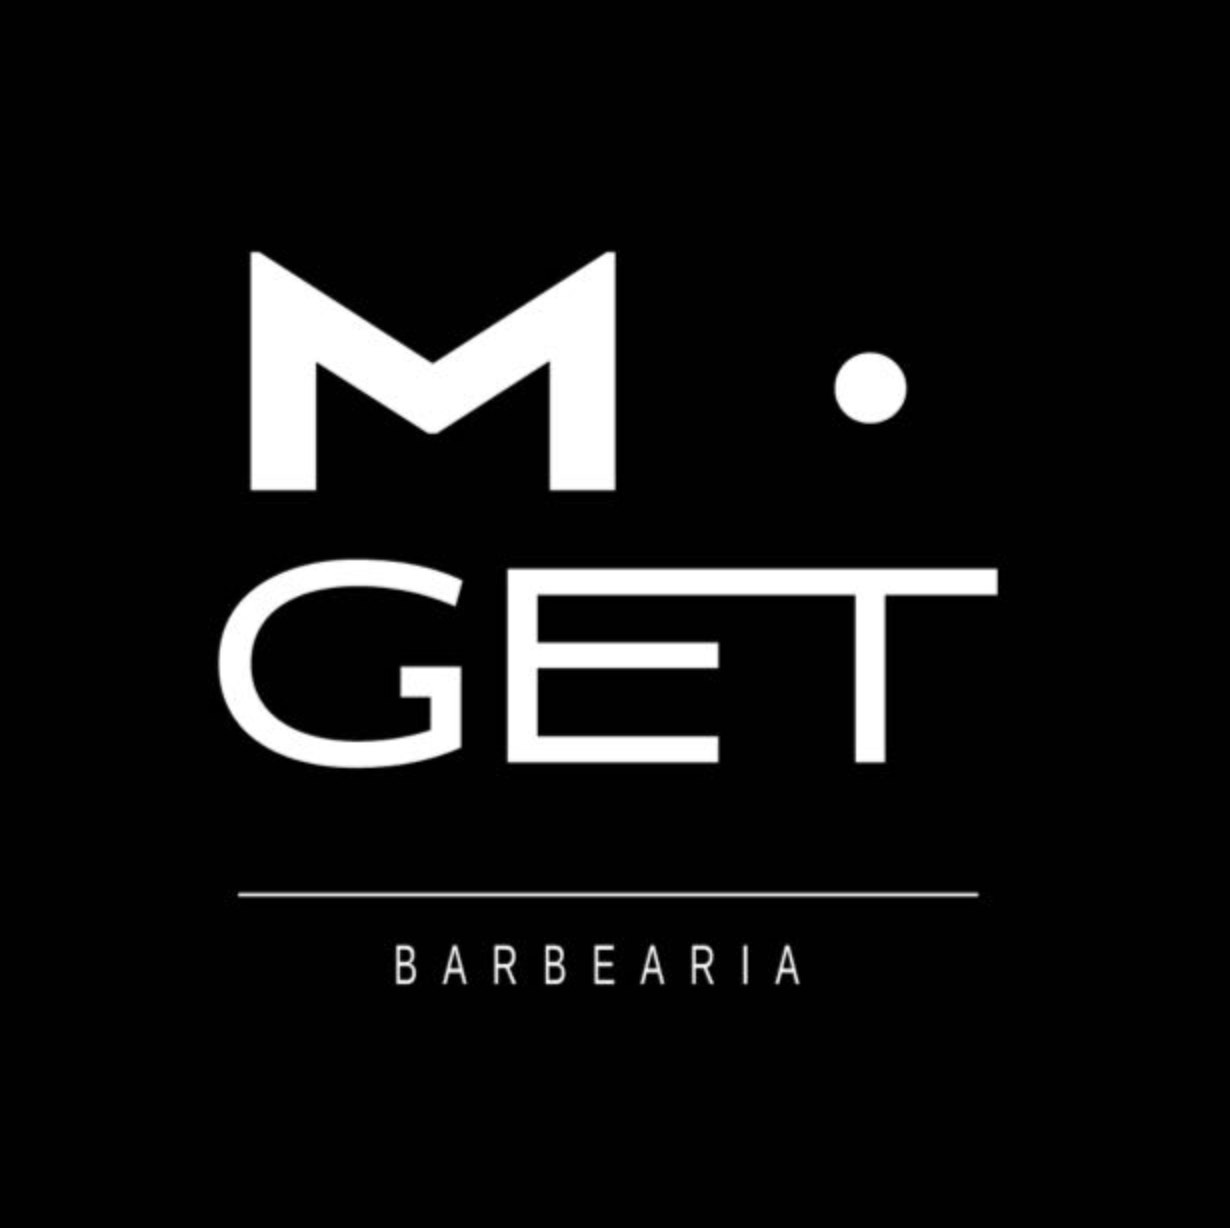 (c) Mgetbarbearia.com.br